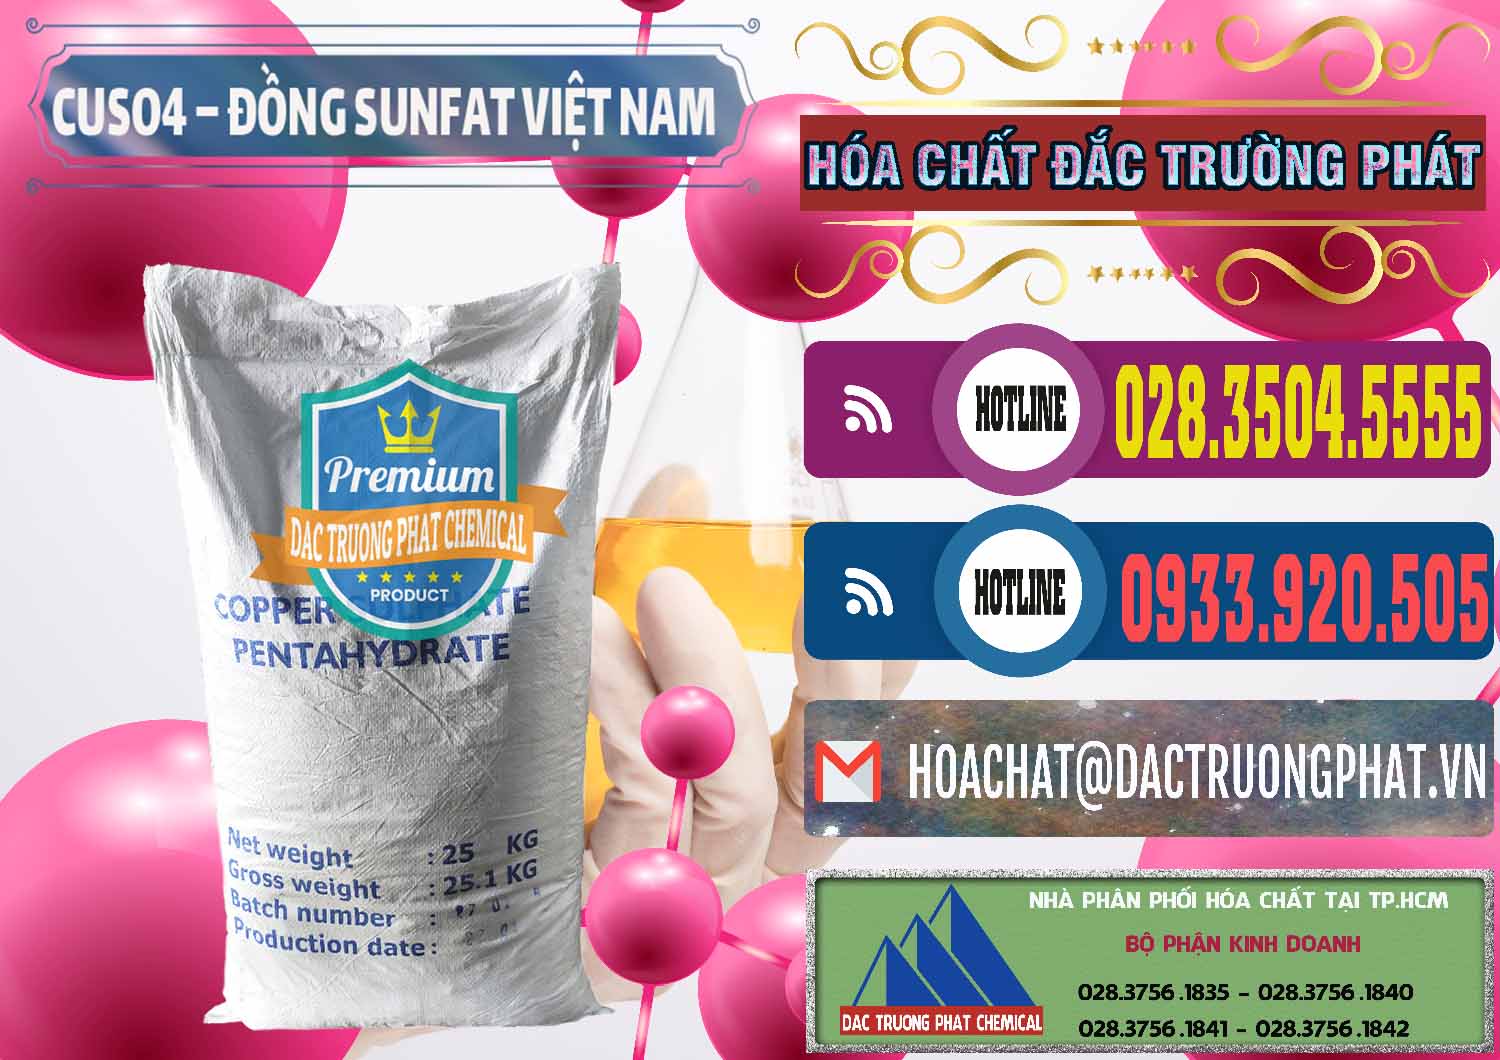 Nơi cung ứng & bán CuSO4 – Đồng Sunfat Dạng Bột Việt Nam - 0196 - Công ty chuyên kinh doanh và bán hóa chất tại TP.HCM - muabanhoachat.com.vn